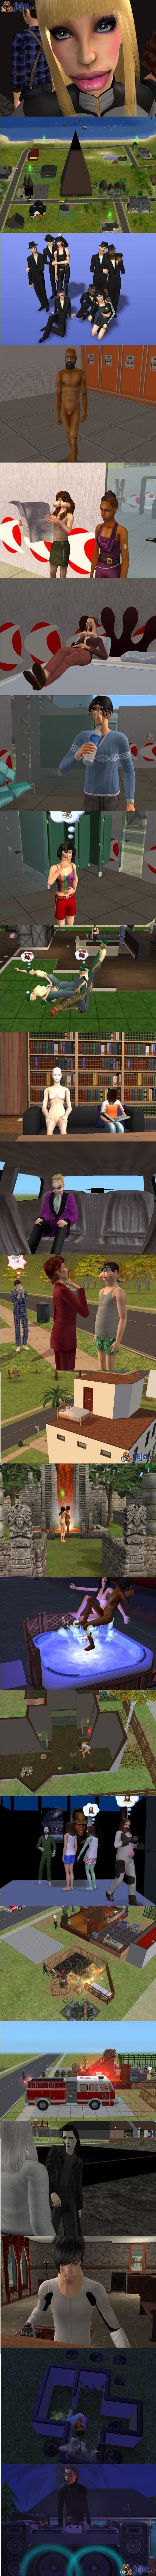 Nie wszyscy powinni grać w The Sims...